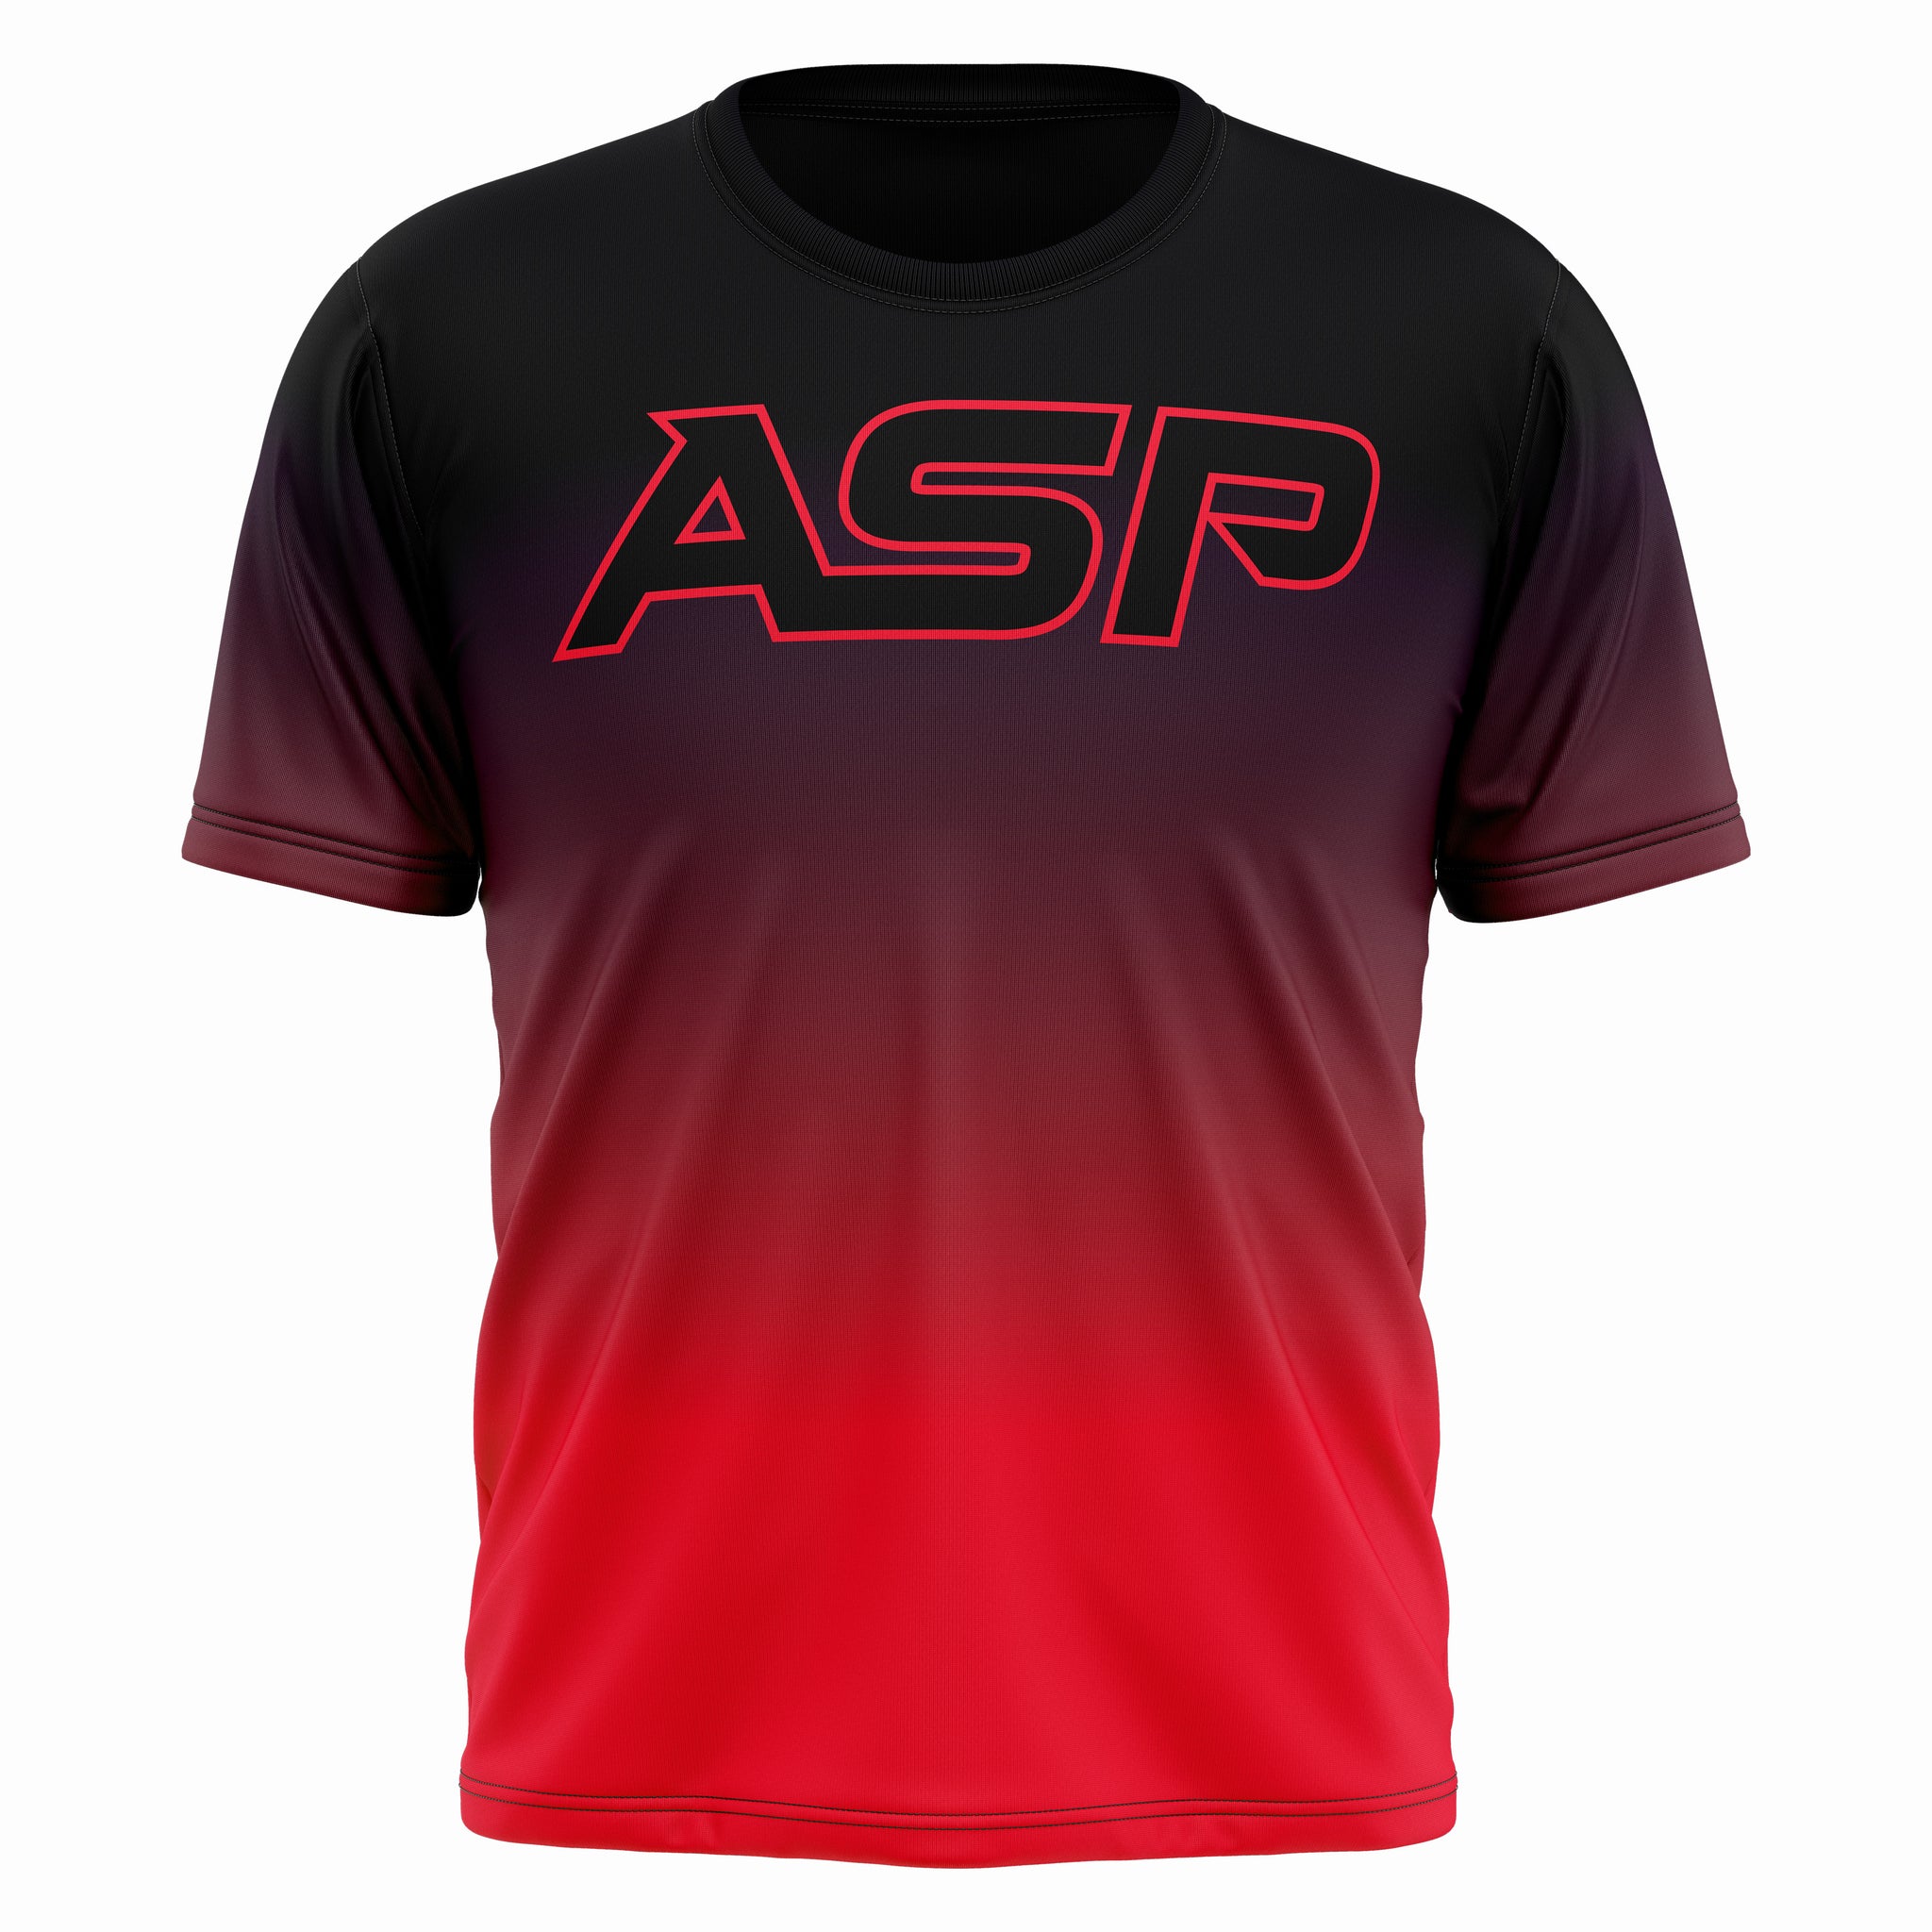 ASP Gradient Series 2.0 Short Sleeve